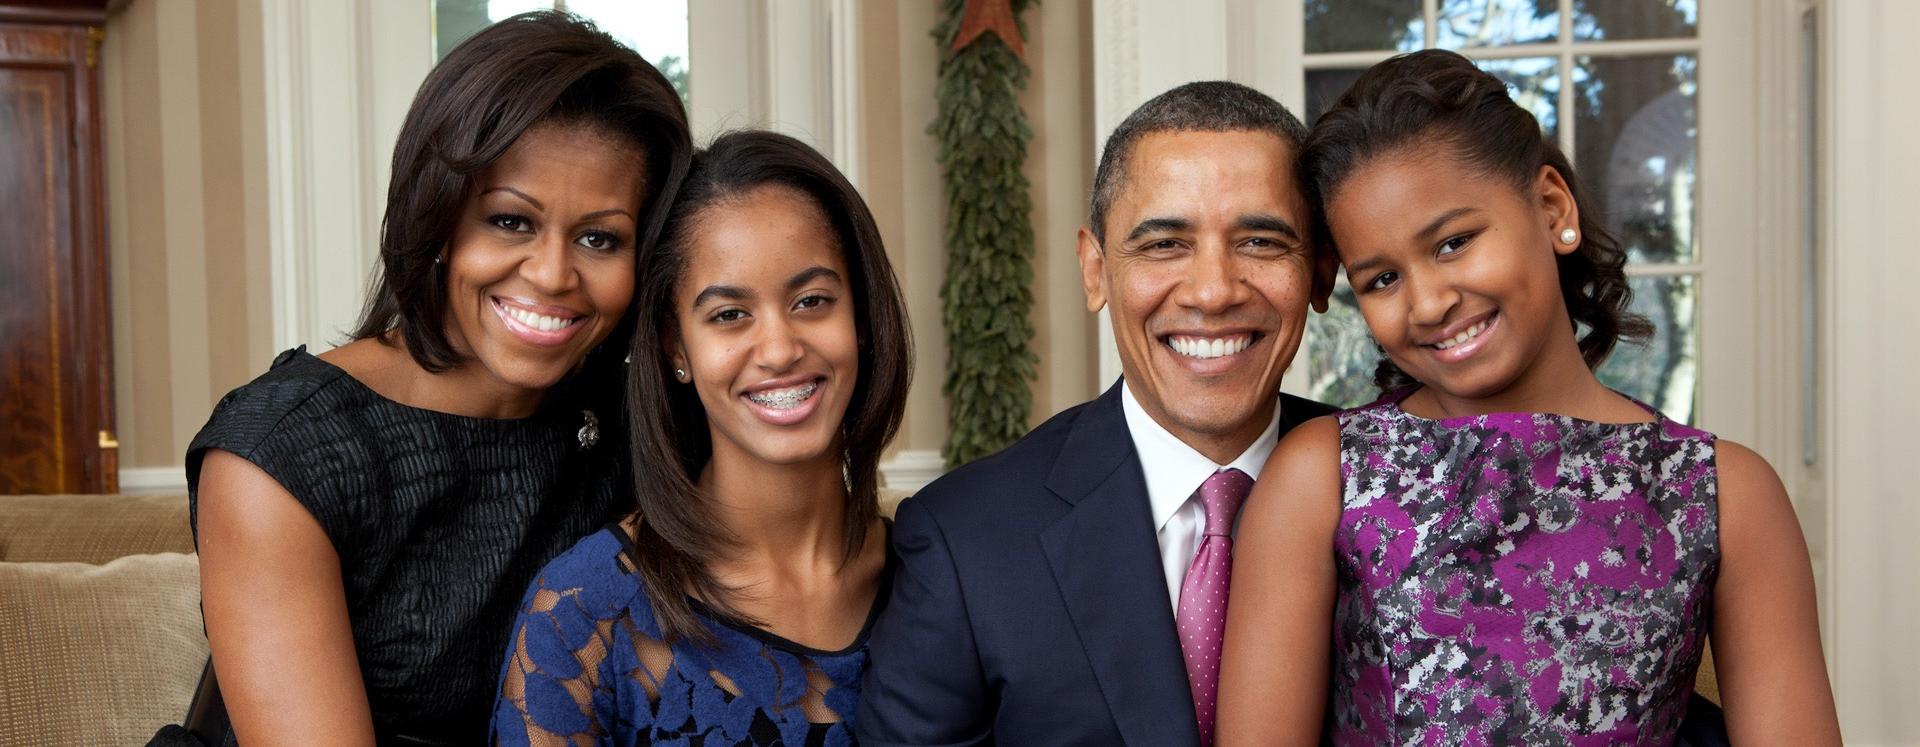 Barack And Michelle Obama With Daughters Malia And Sasha